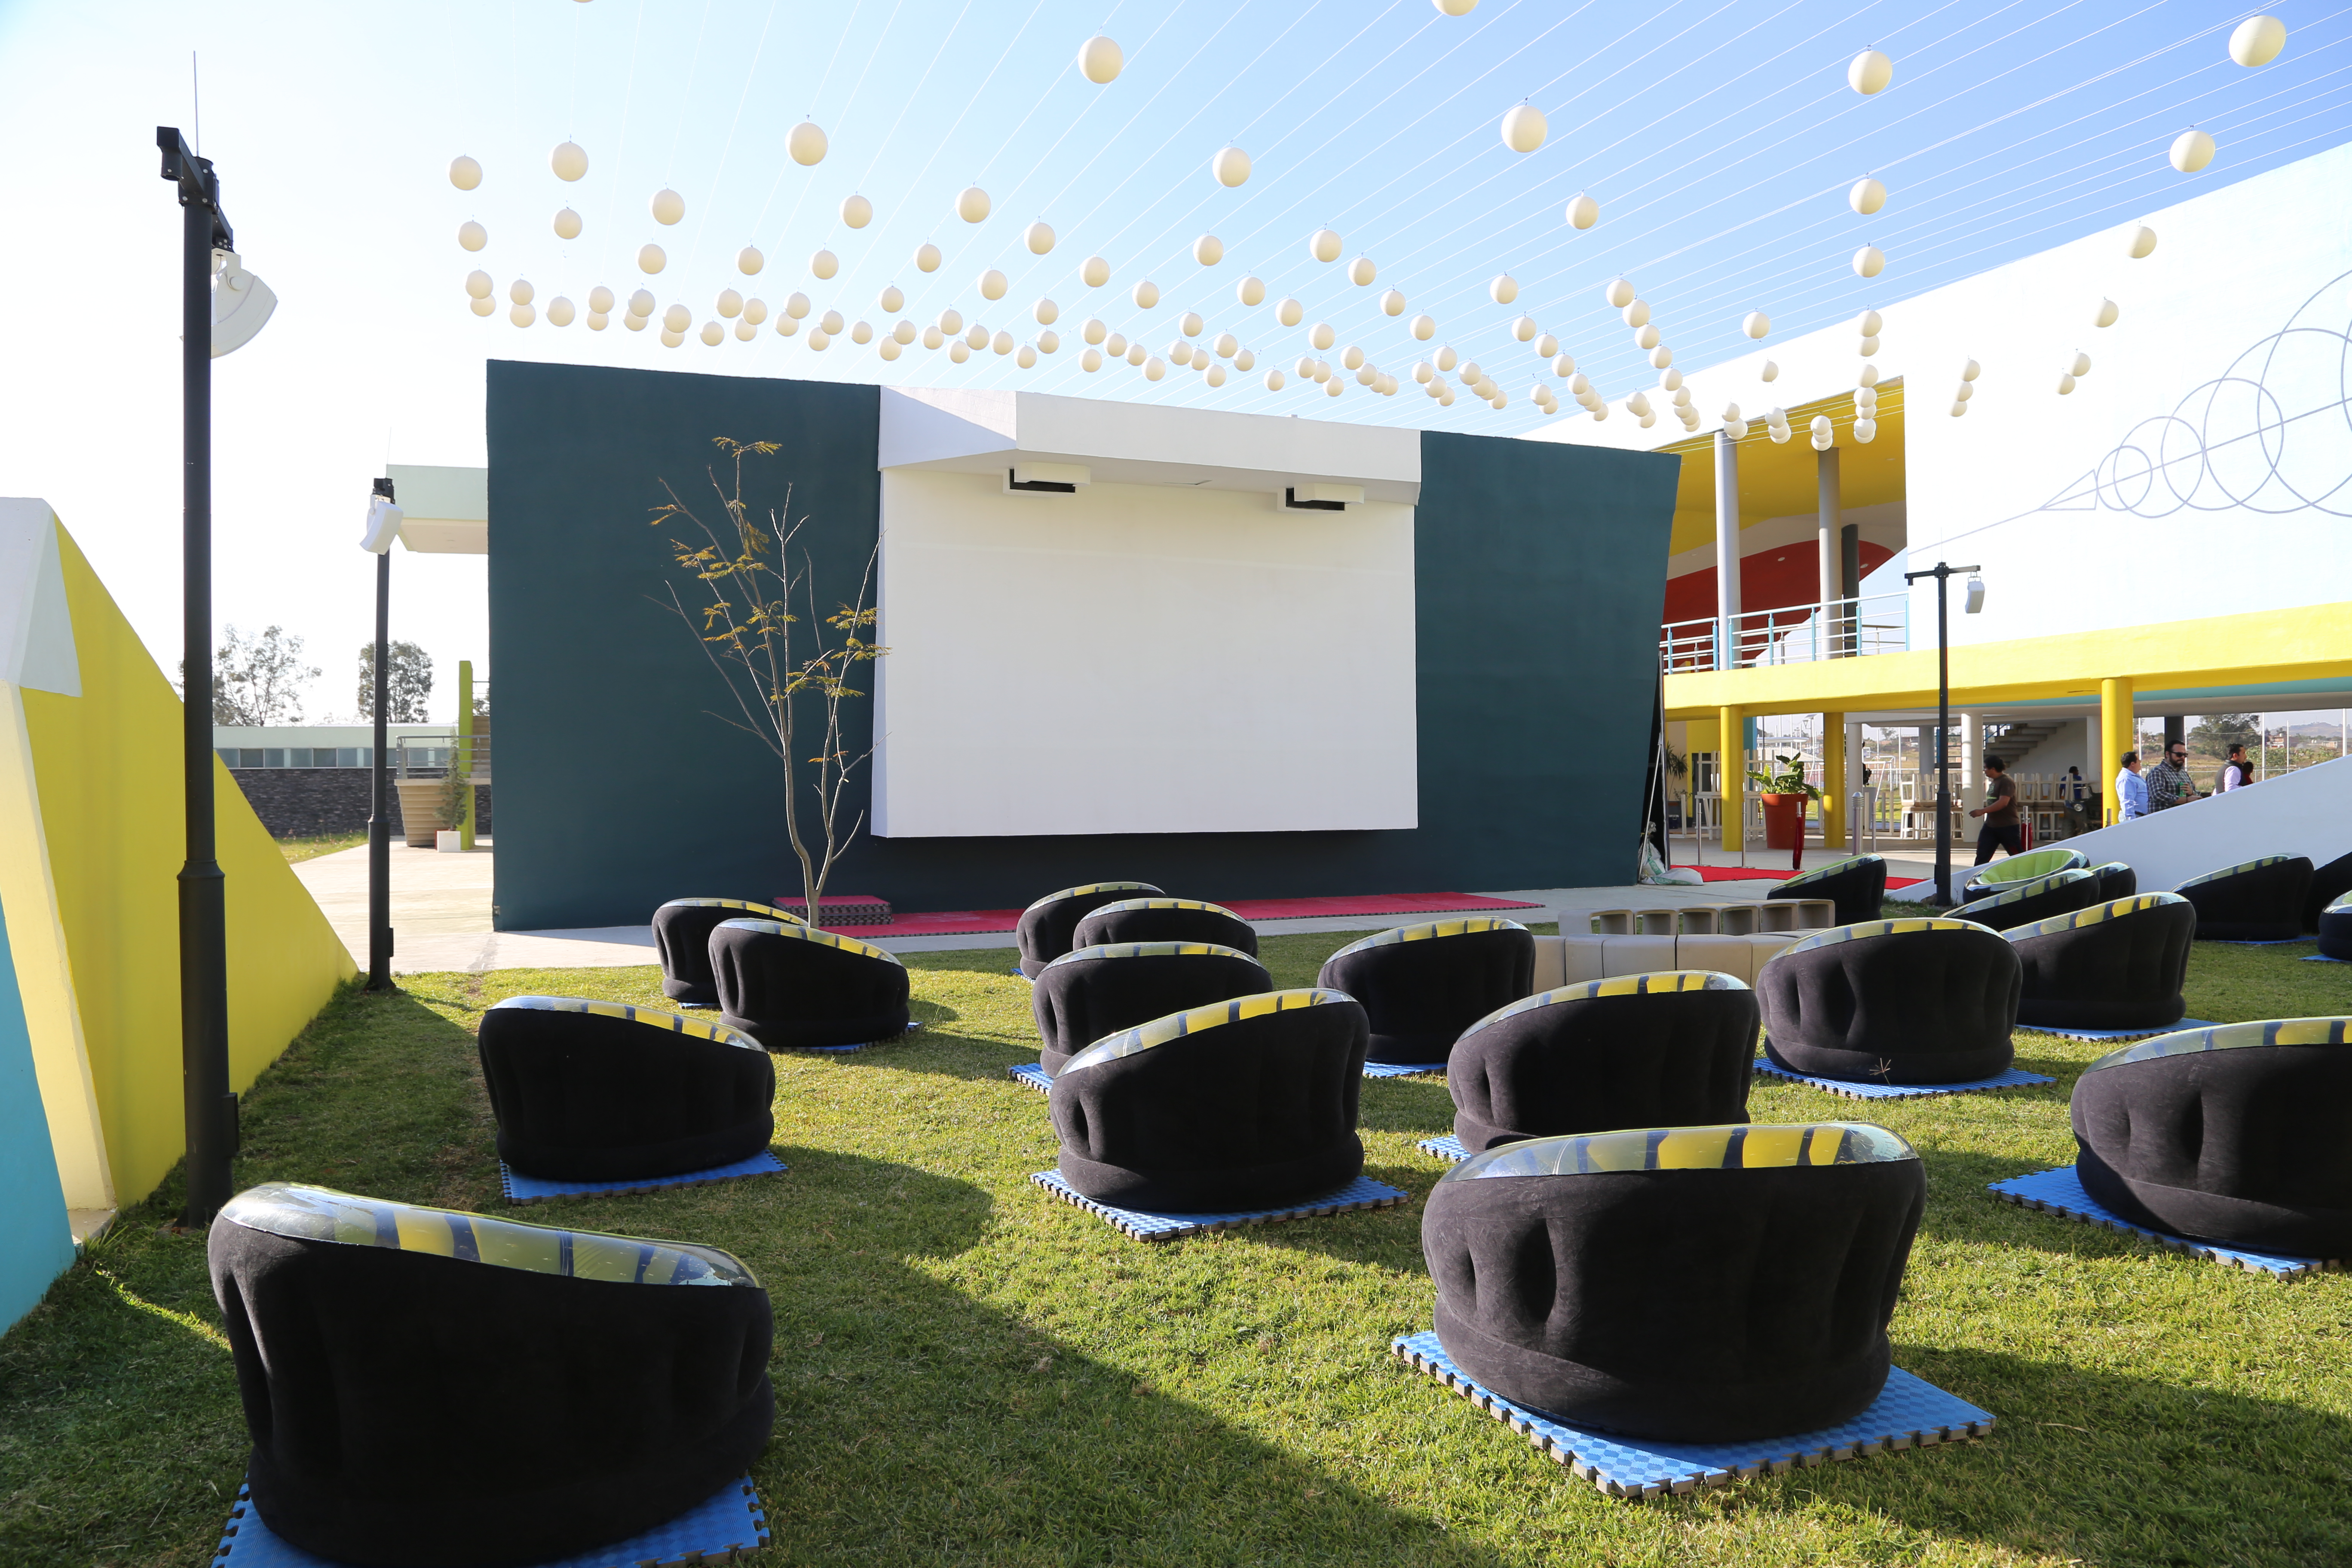 Con alfombra roja, el Centro Universitario de Tonalá inauguró la Sala de la Cineteca del Festival Internacional de Cine en Guadalajara – FICG y un cine al aire libre.